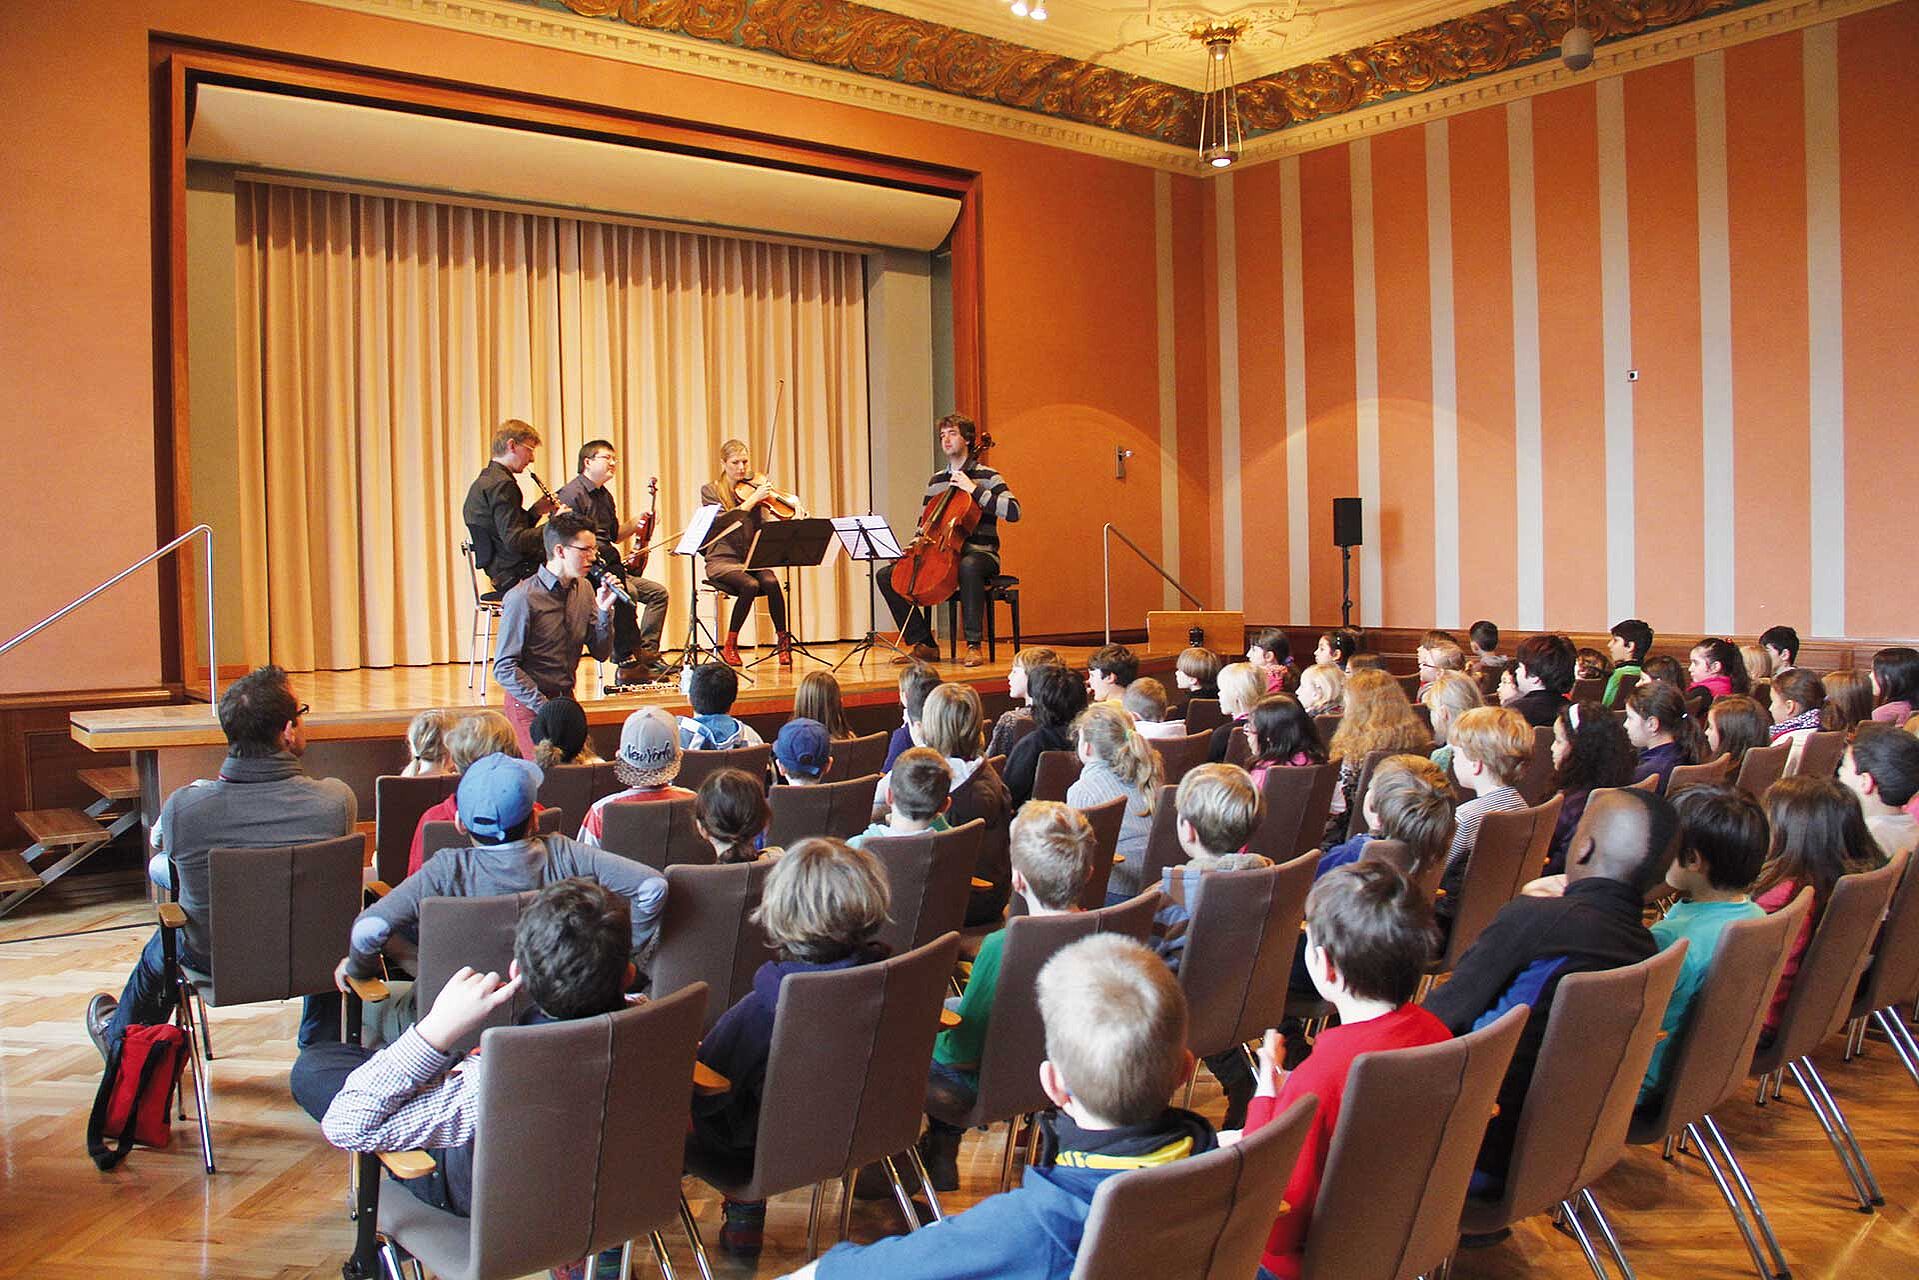 Schulkonzert im Mahler Saal in der Historischen Stadthalle Wuppertal